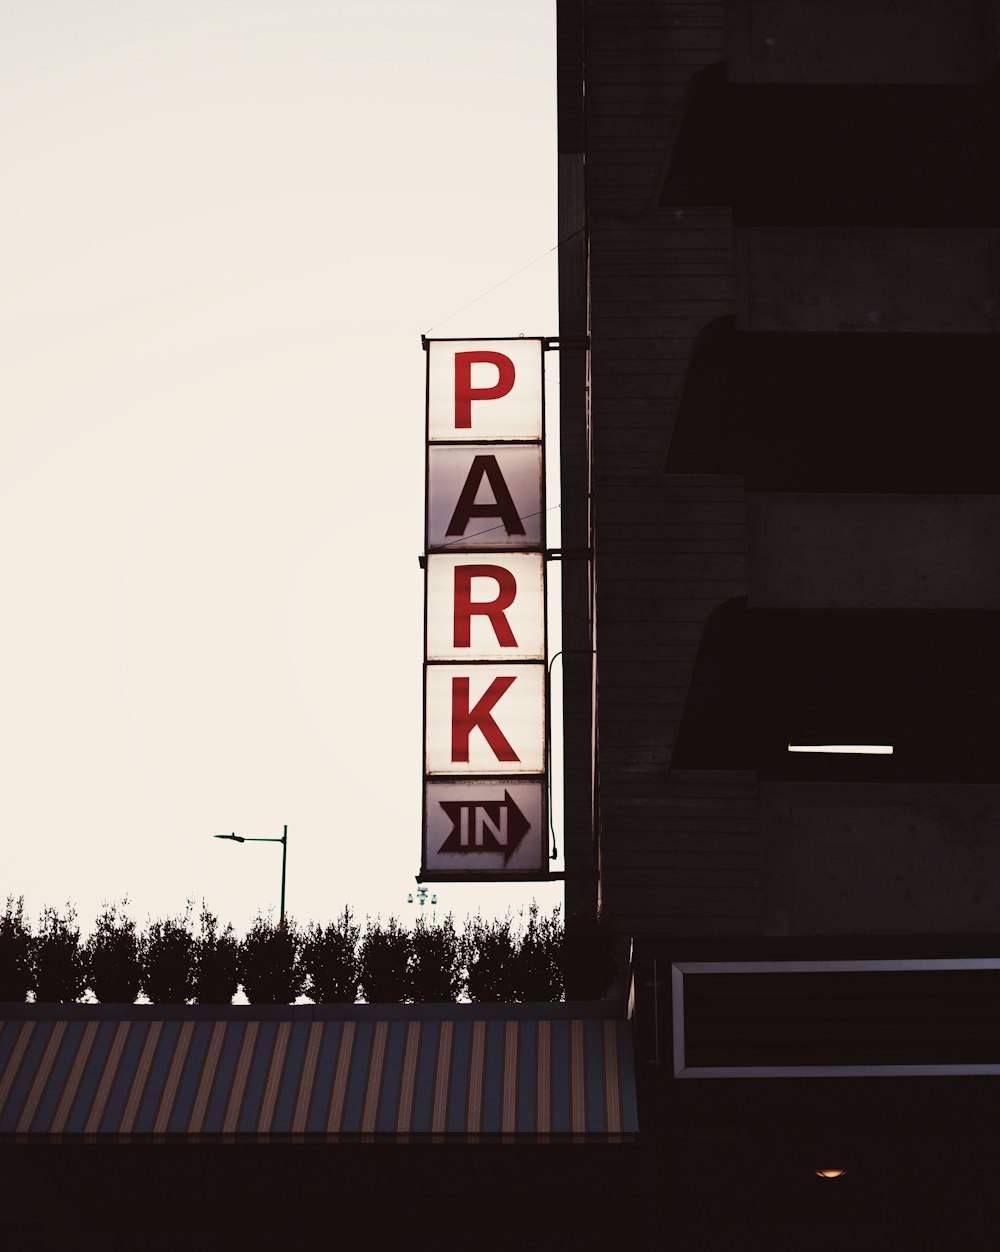 Park In signage